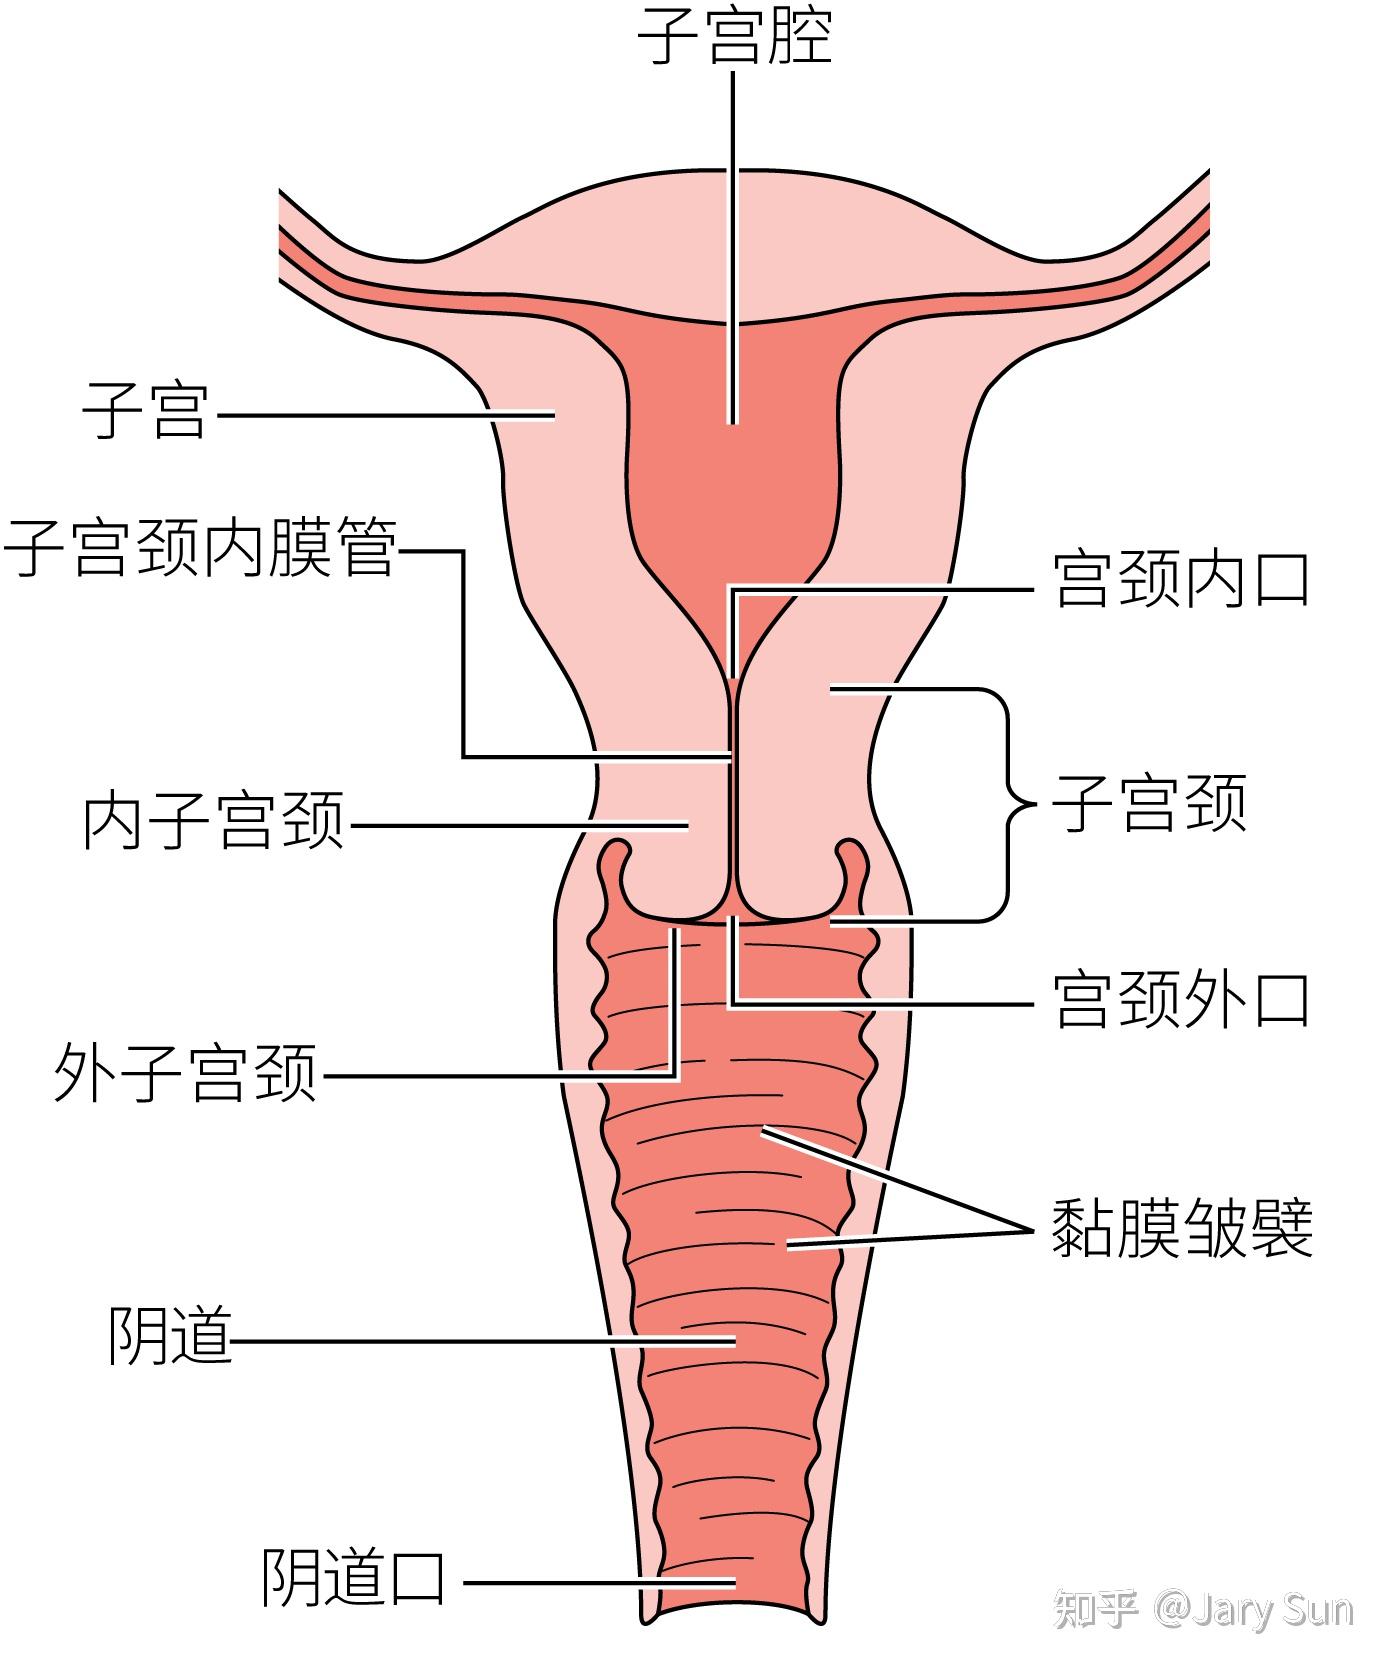 健康女性阴道,外阴,宫颈和子宫常驻菌群多年来,健康人阴道,外阴和宫颈